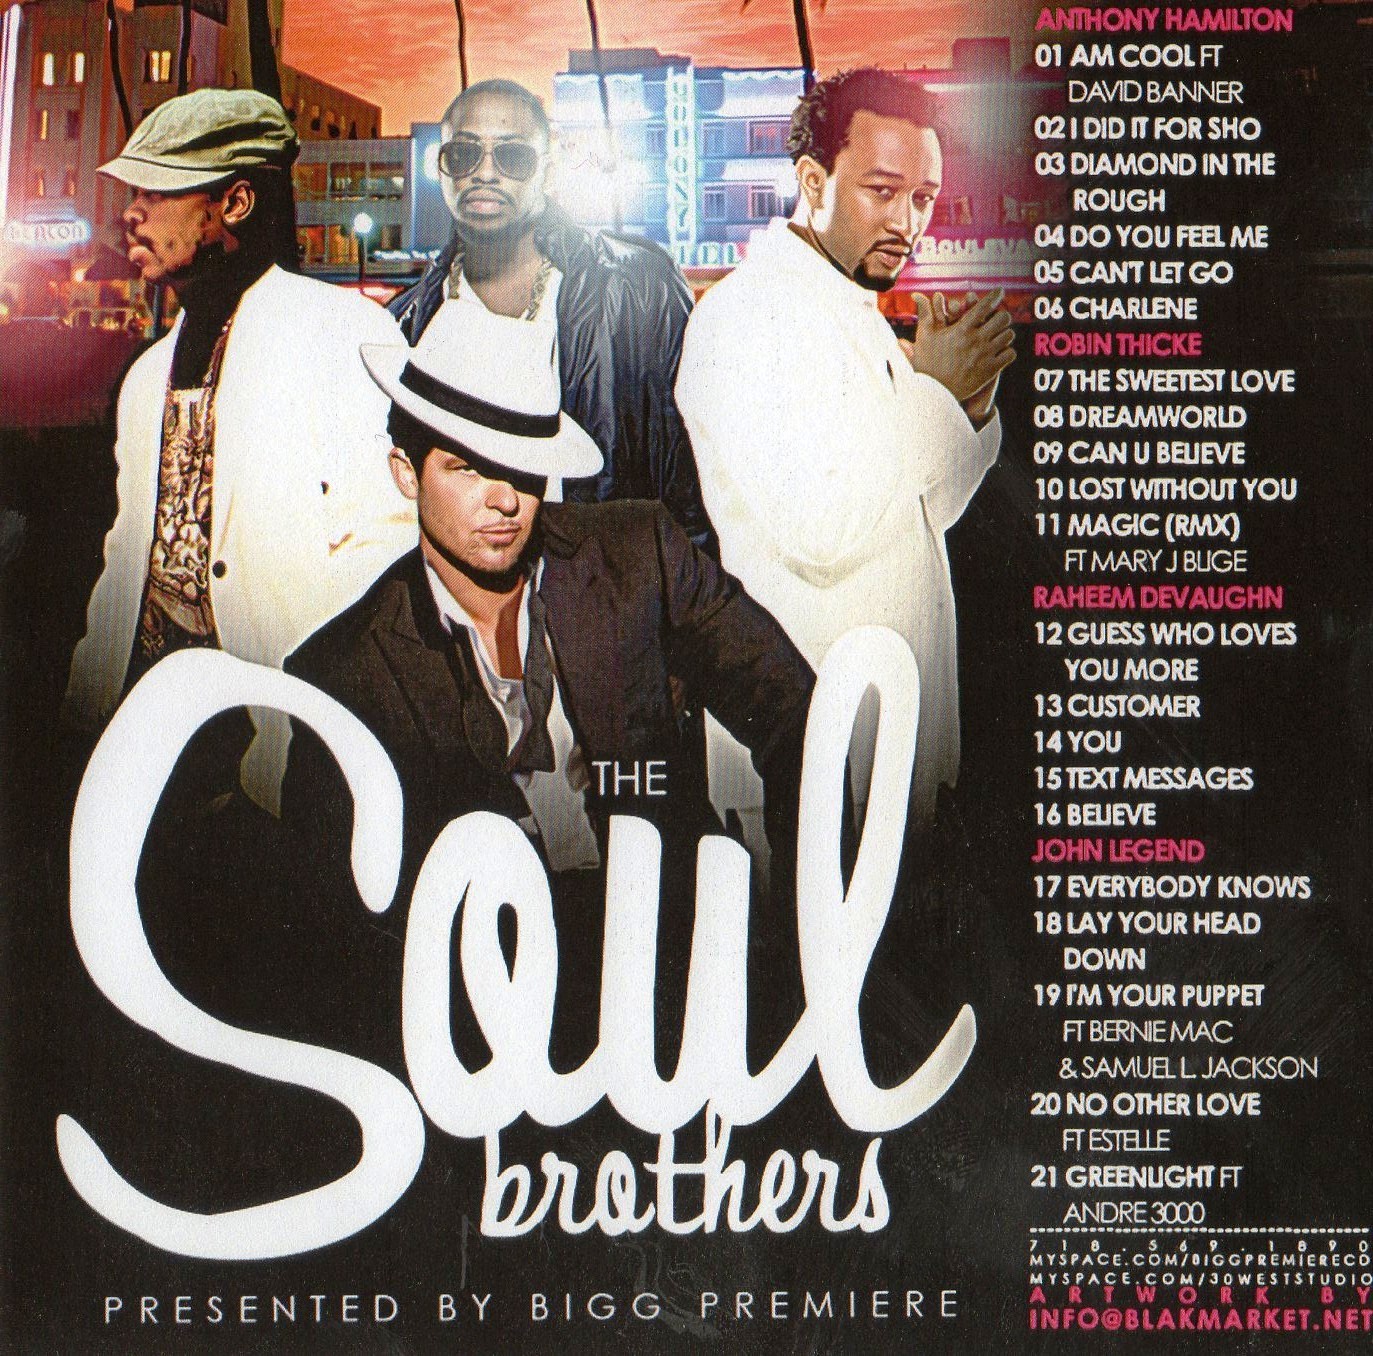 http://4.bp.blogspot.com/_bjRkMjF5ysQ/SeHYMm0aVlI/AAAAAAAAI3U/6GvcoeE_0Ro/s1600/00_VA-Bigg_Premiere_Presents_the_Soul_Brothers-2009.jpg